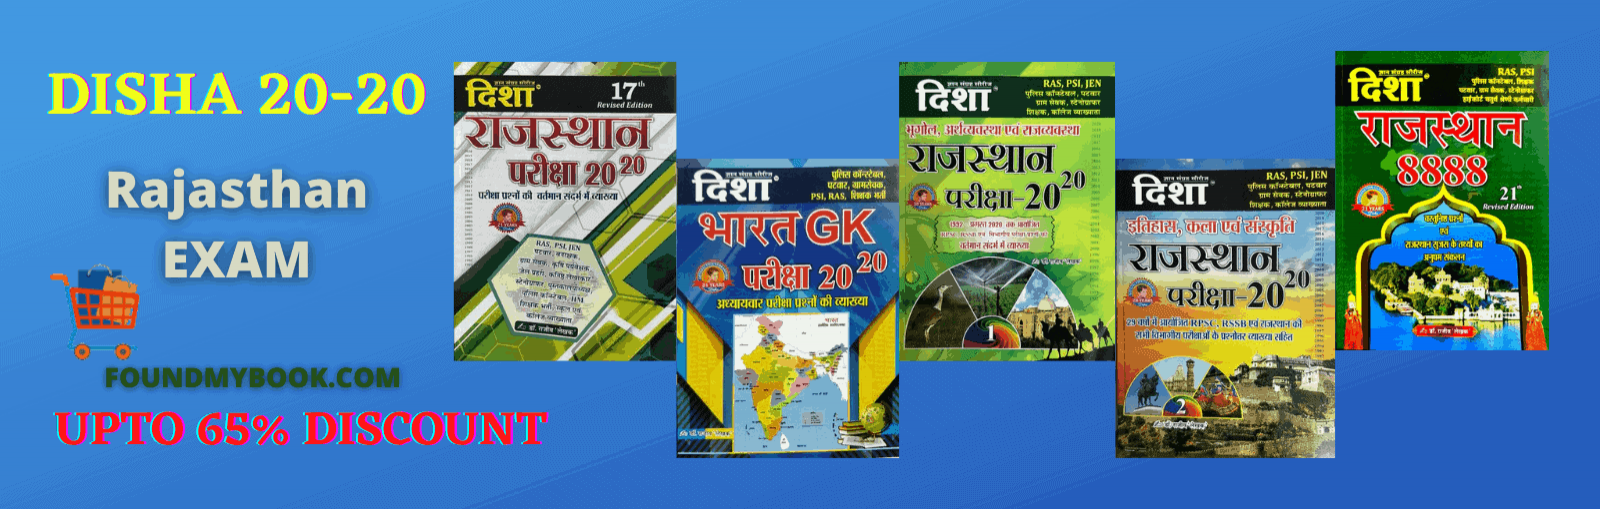 Disha Prakashan Books